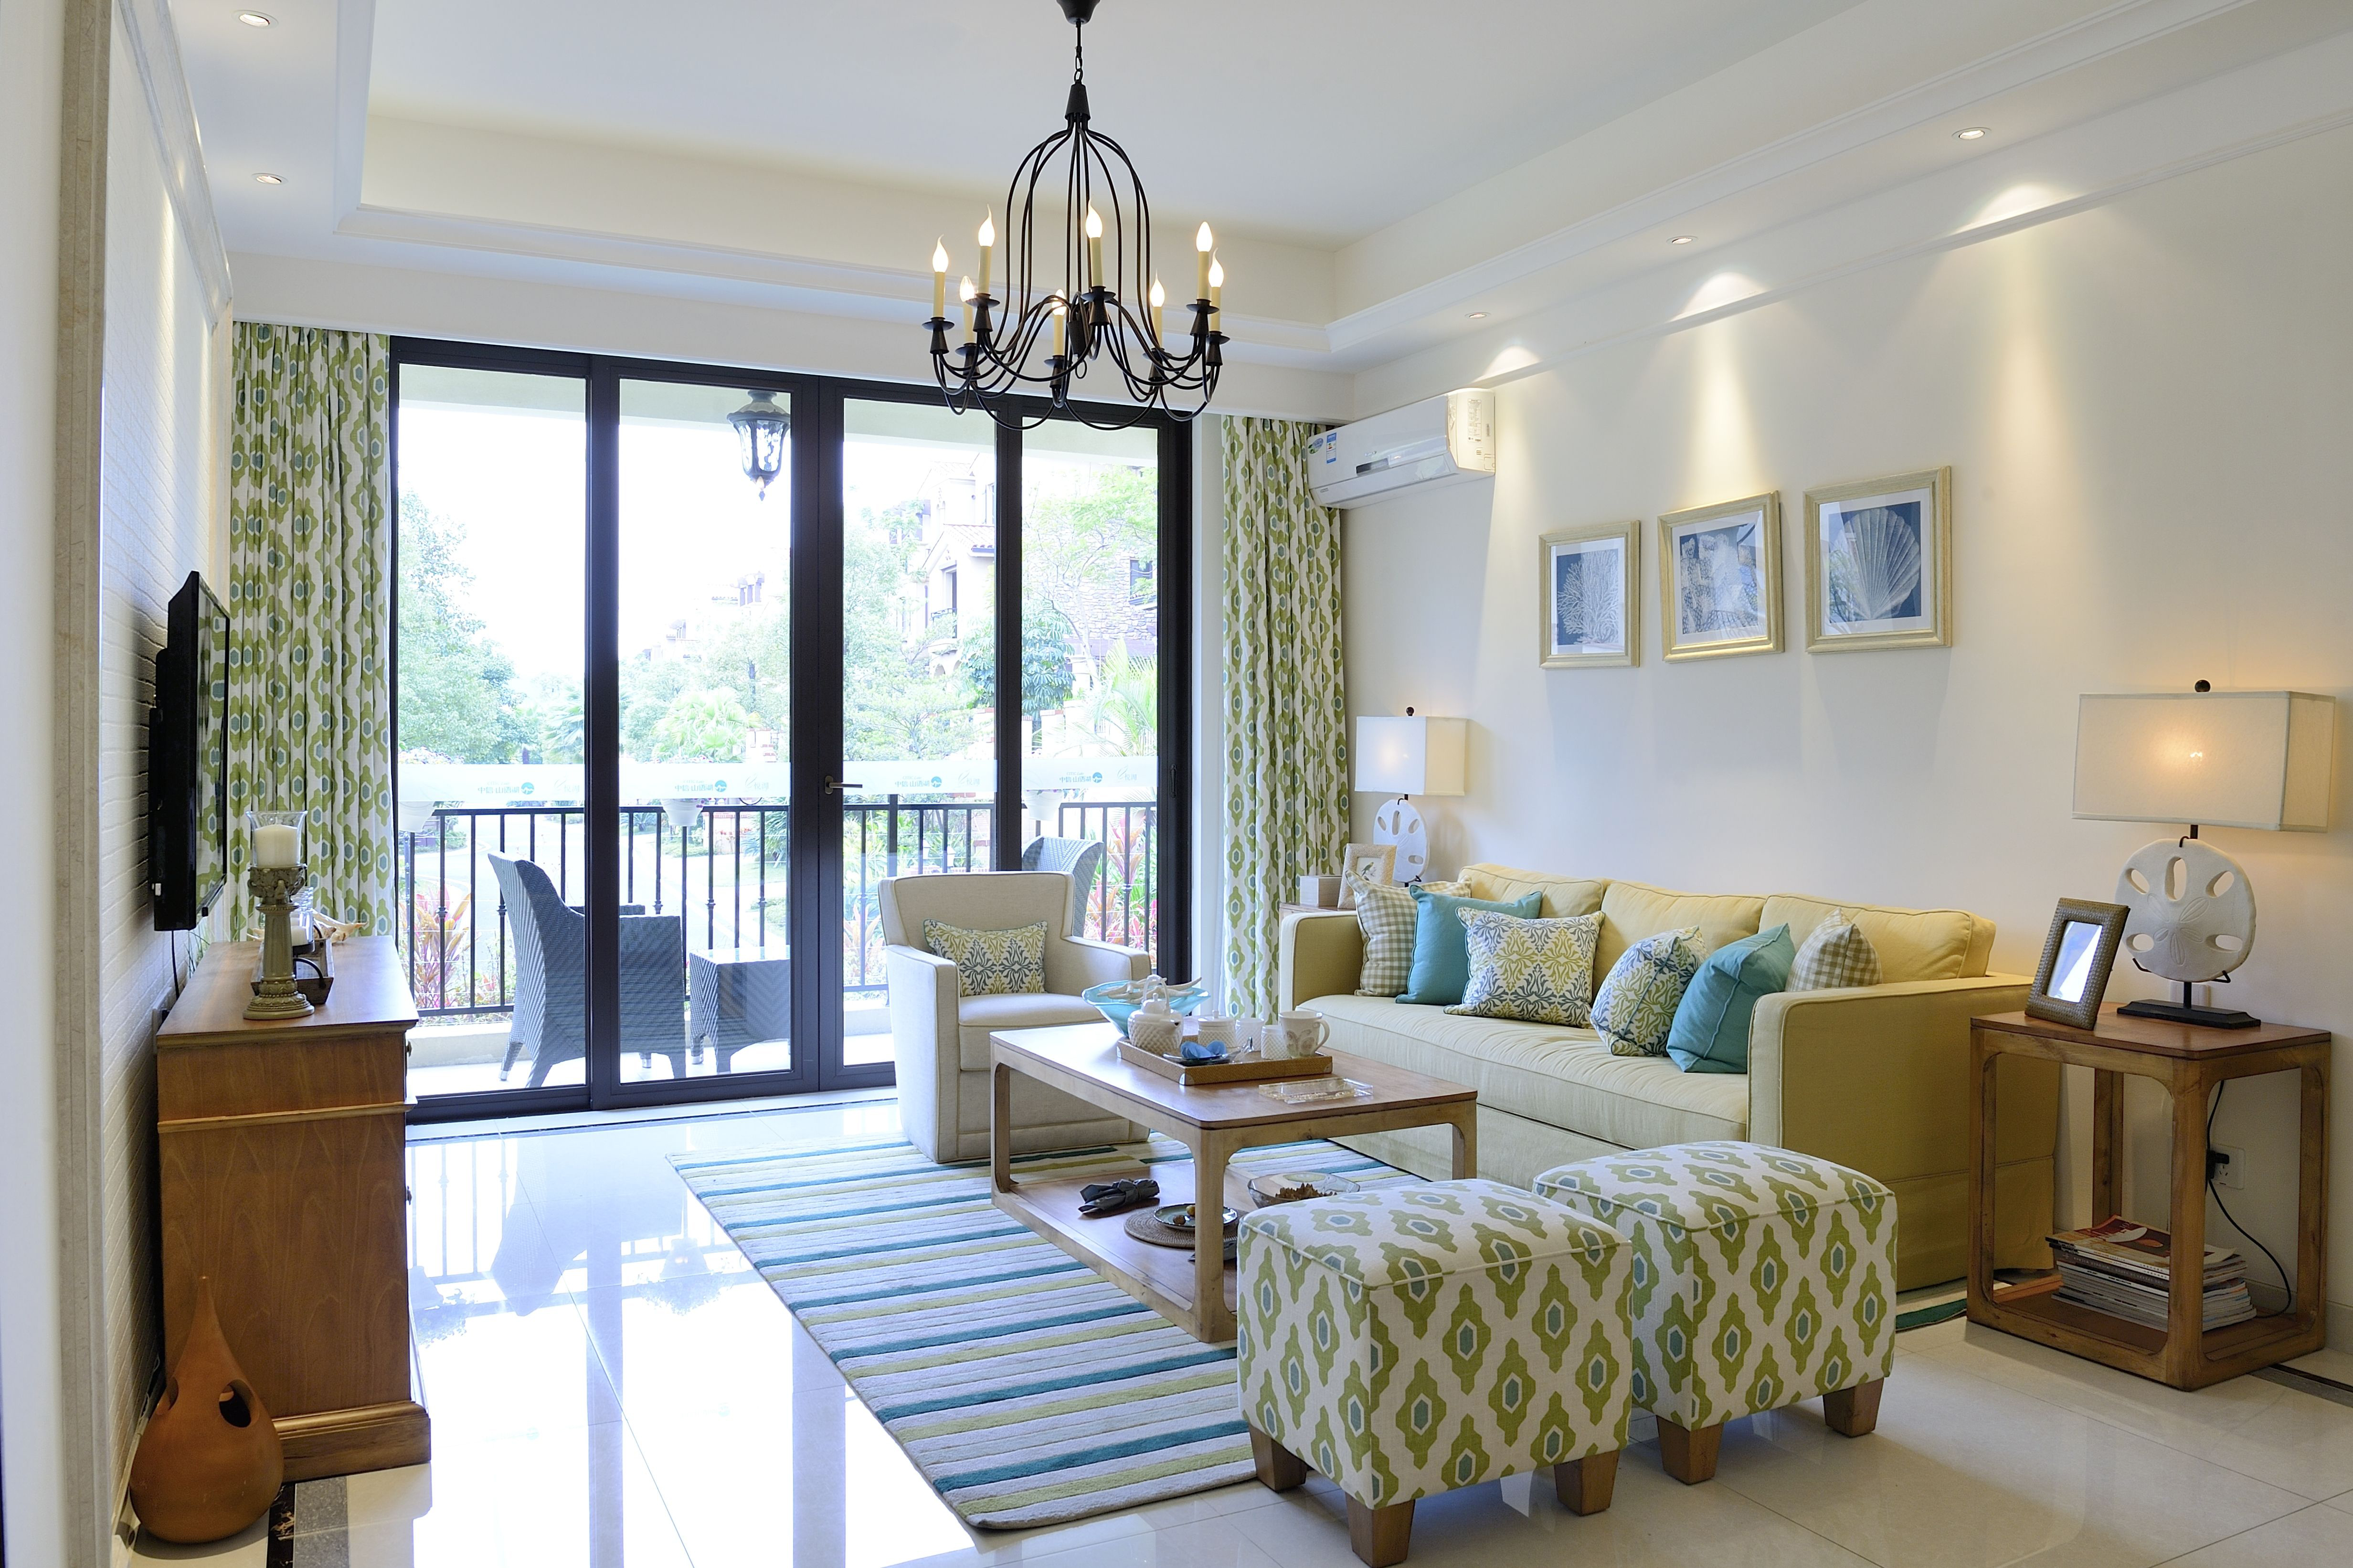 10-15万装修,120平米装修,三居室装修,美式风格,沙发,沙发背景墙,米色,绿色,窗帘